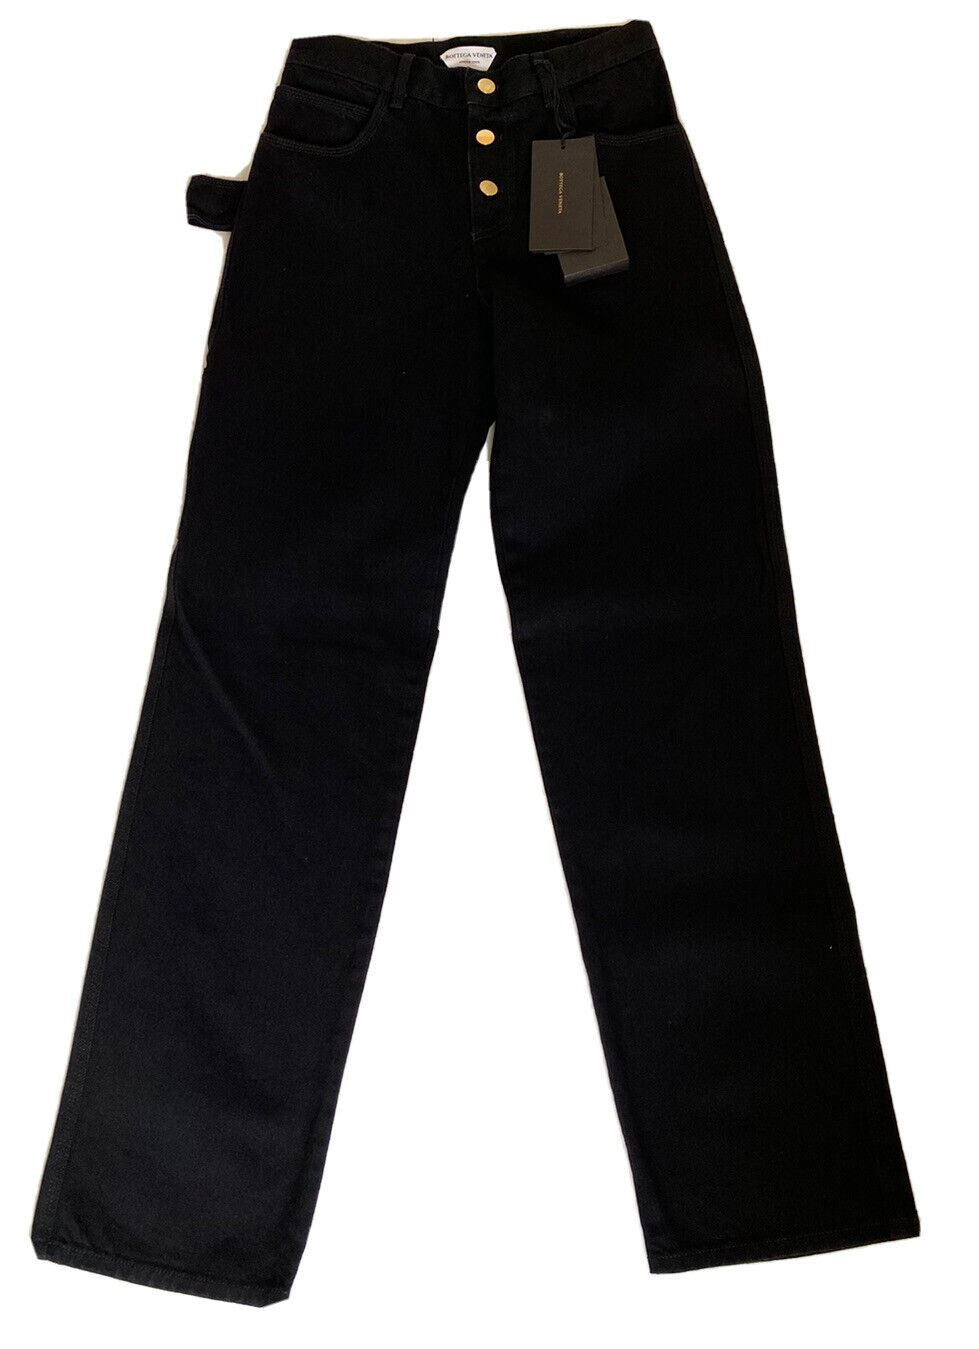 NWT 950 $ Bottega Veneta High-Waist Jeans Schwarz 2 US (38 Euro) 618452 Italien